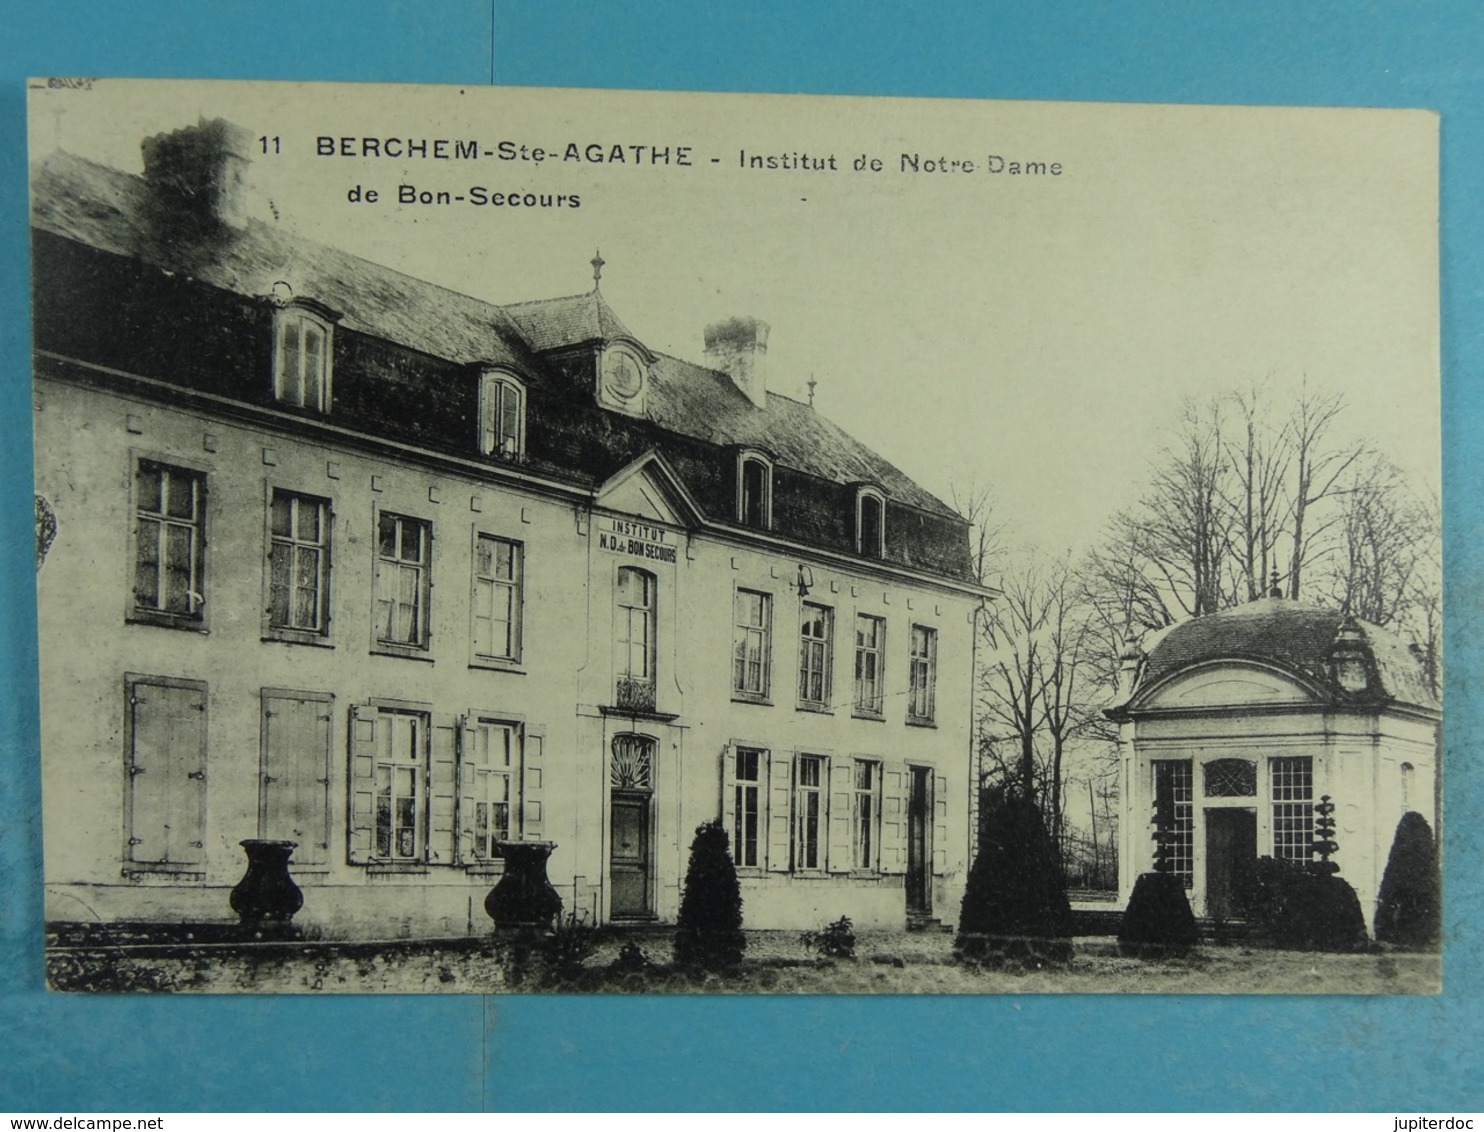 Berchem-Ste-Agathe Institut De Notre Dame - St-Agatha-Berchem - Berchem-Ste-Agathe